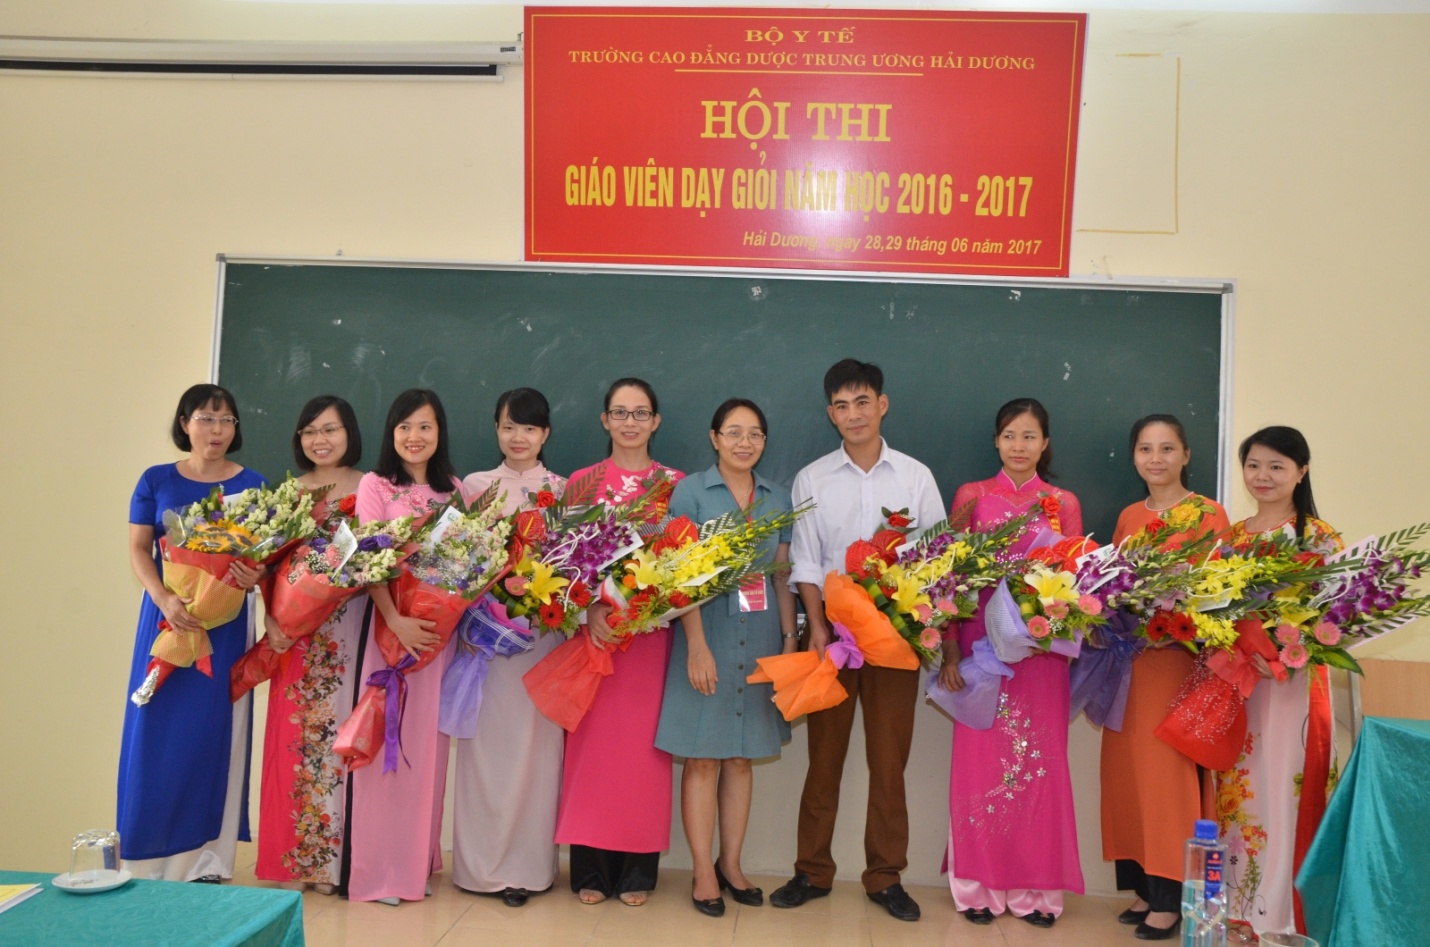 TS Nguyễn Thị Hường Hiệu trưởng nhà trường tặng hoa chúc mừng các thầy cô giáo tham gia Hội thi